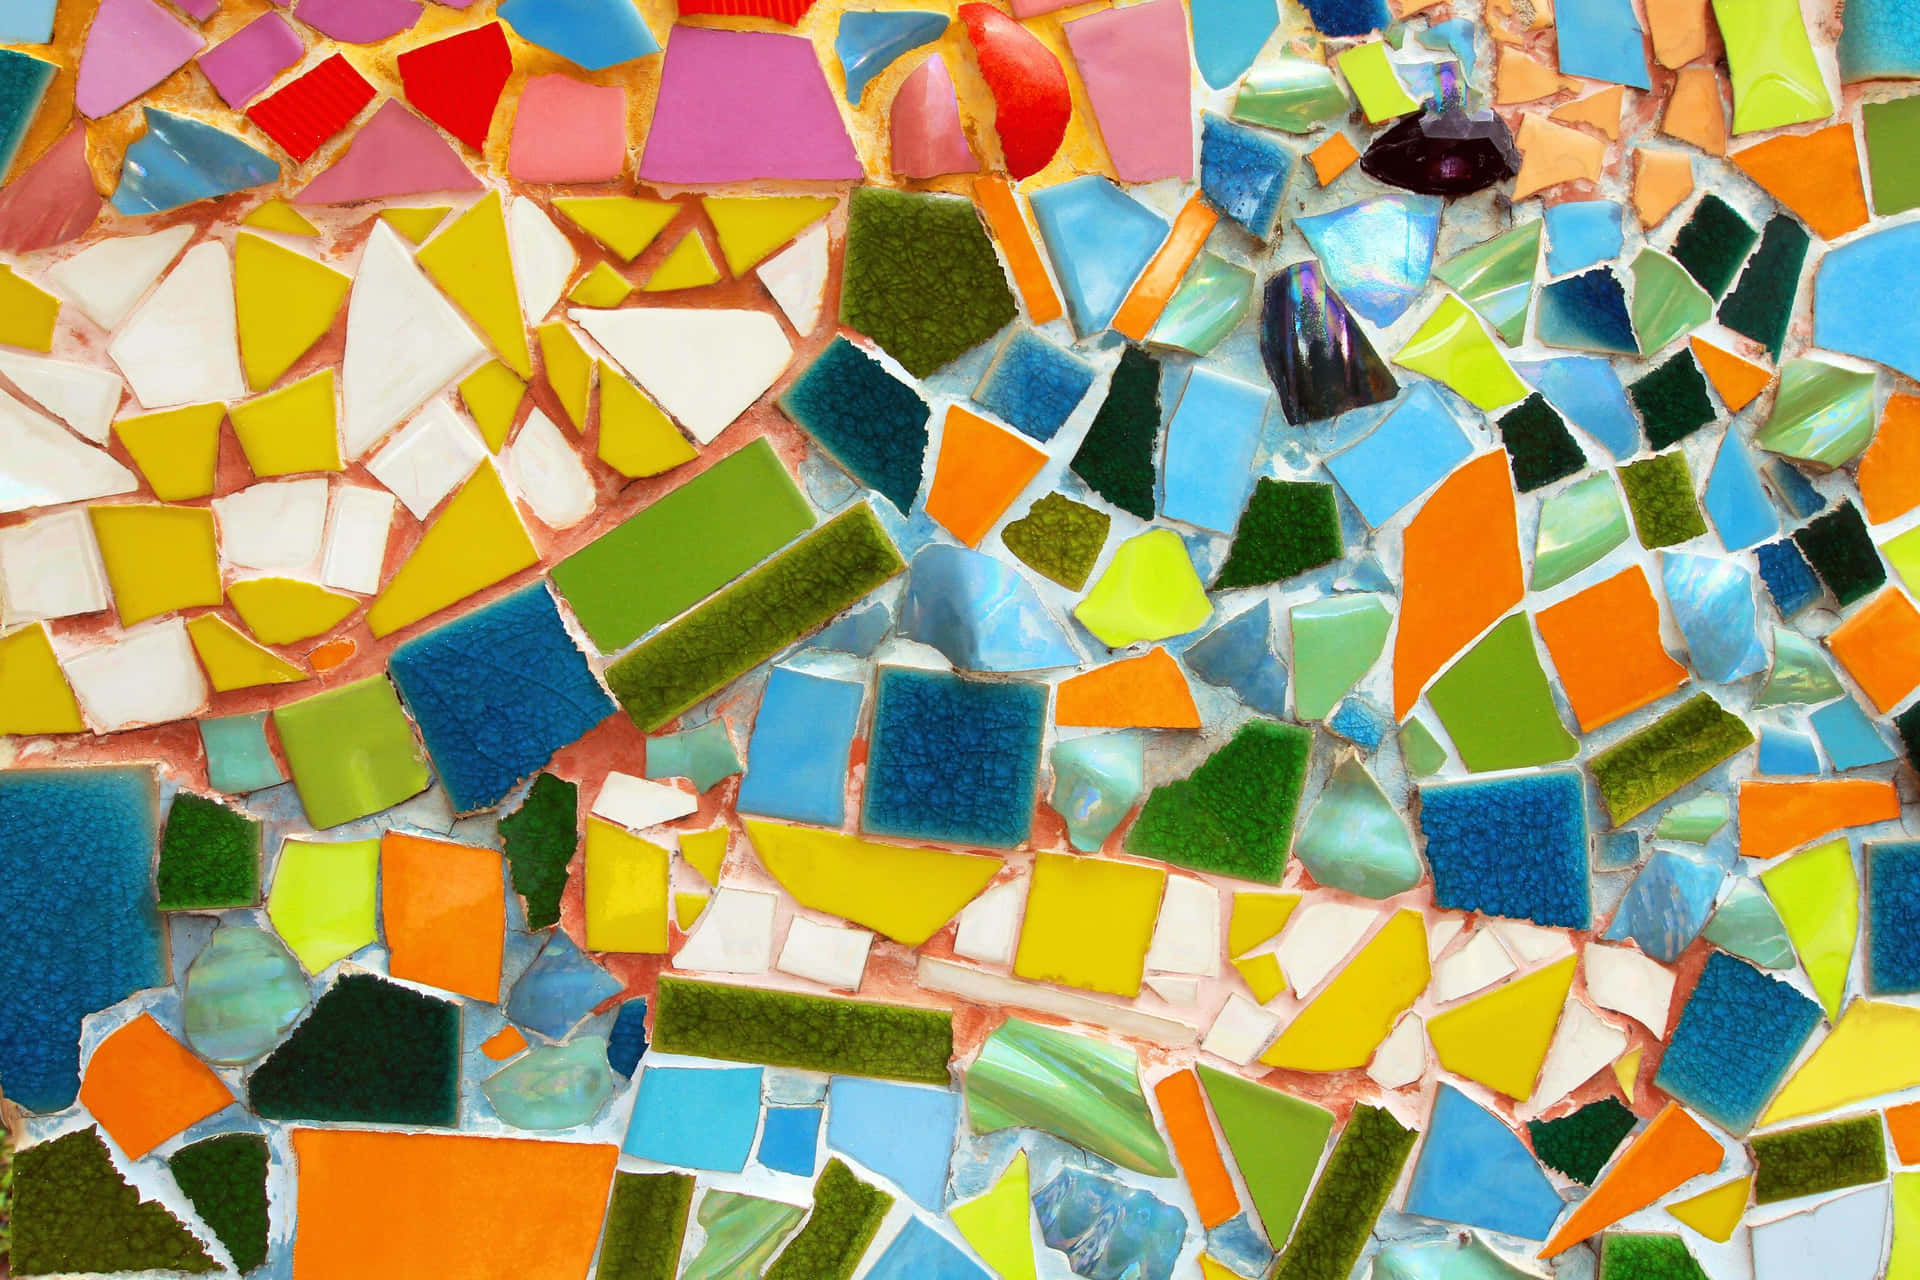 Mosaikfliesemit Bunten Glasstücken